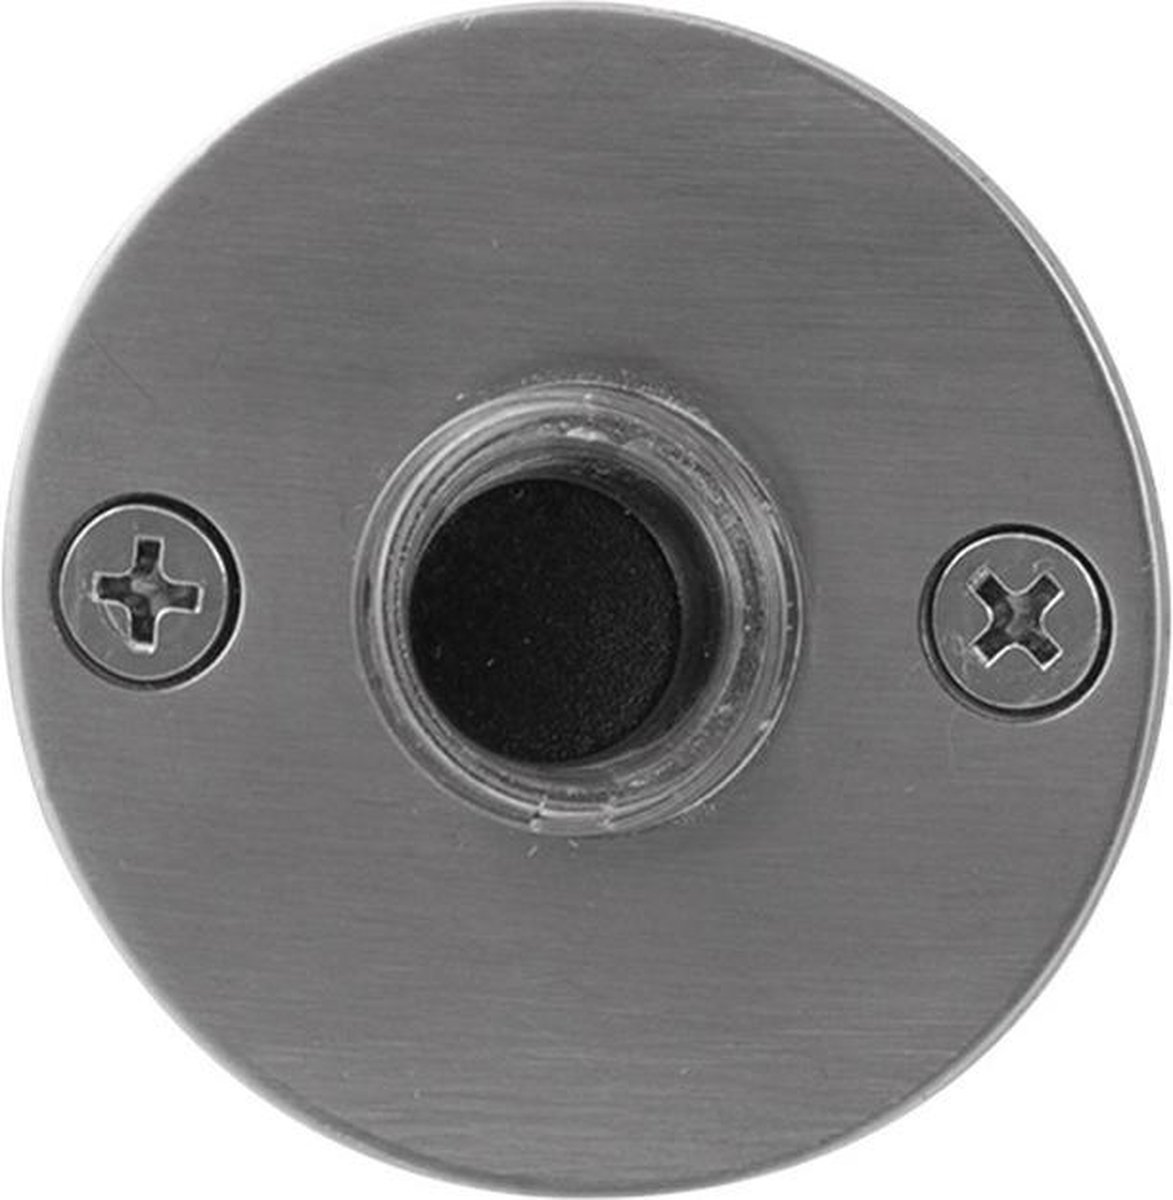 GPF9826.06 deurbel met zwarte button rond 50x2 mm RVS geborsteld